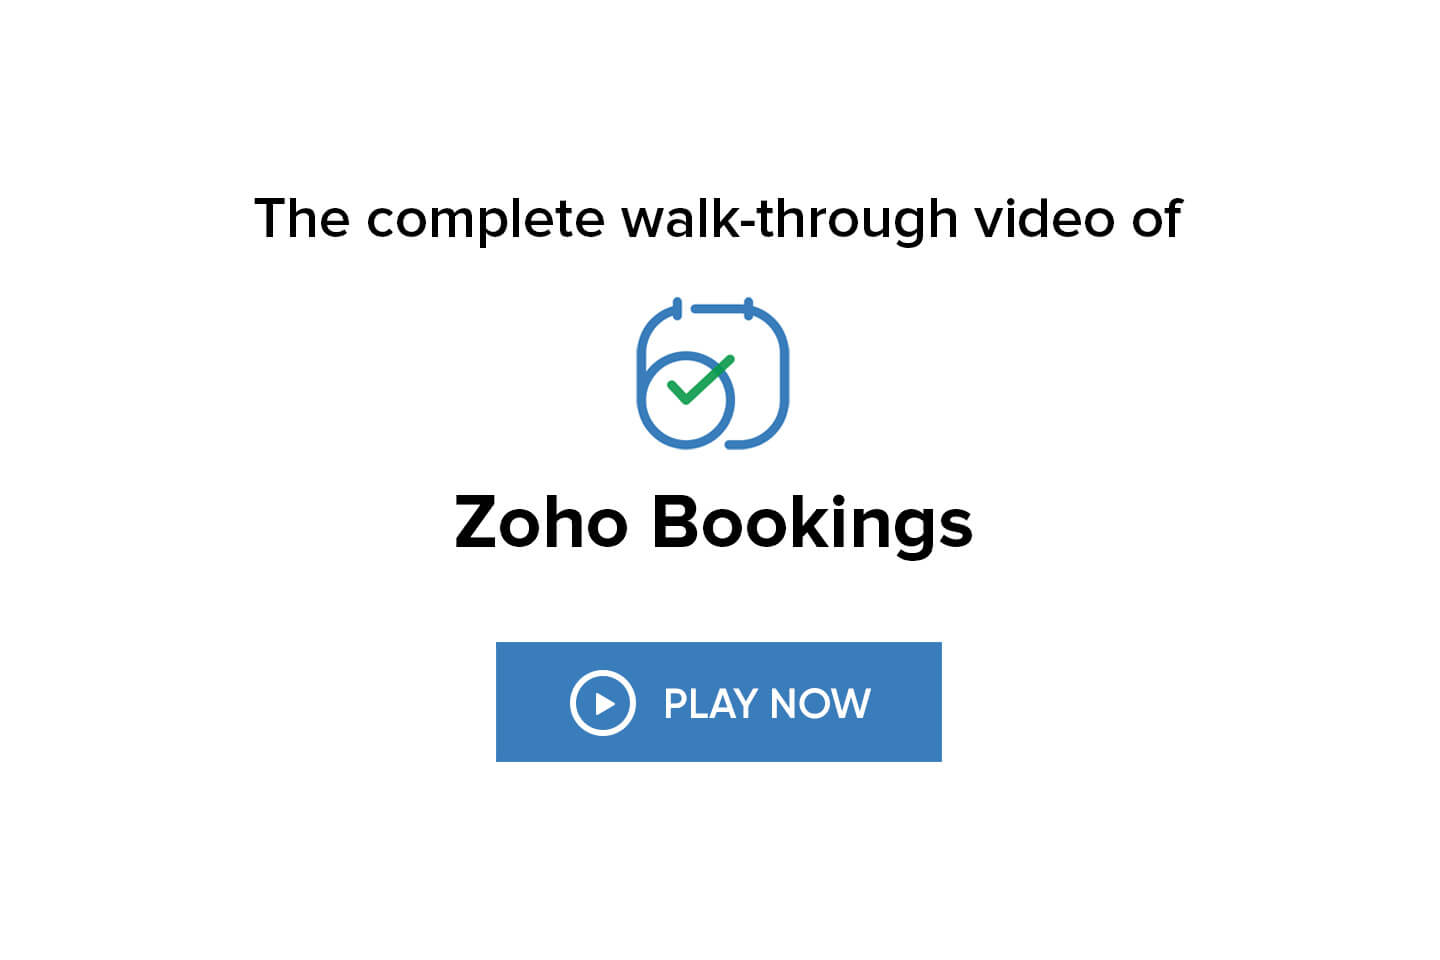 Zoho Bookings